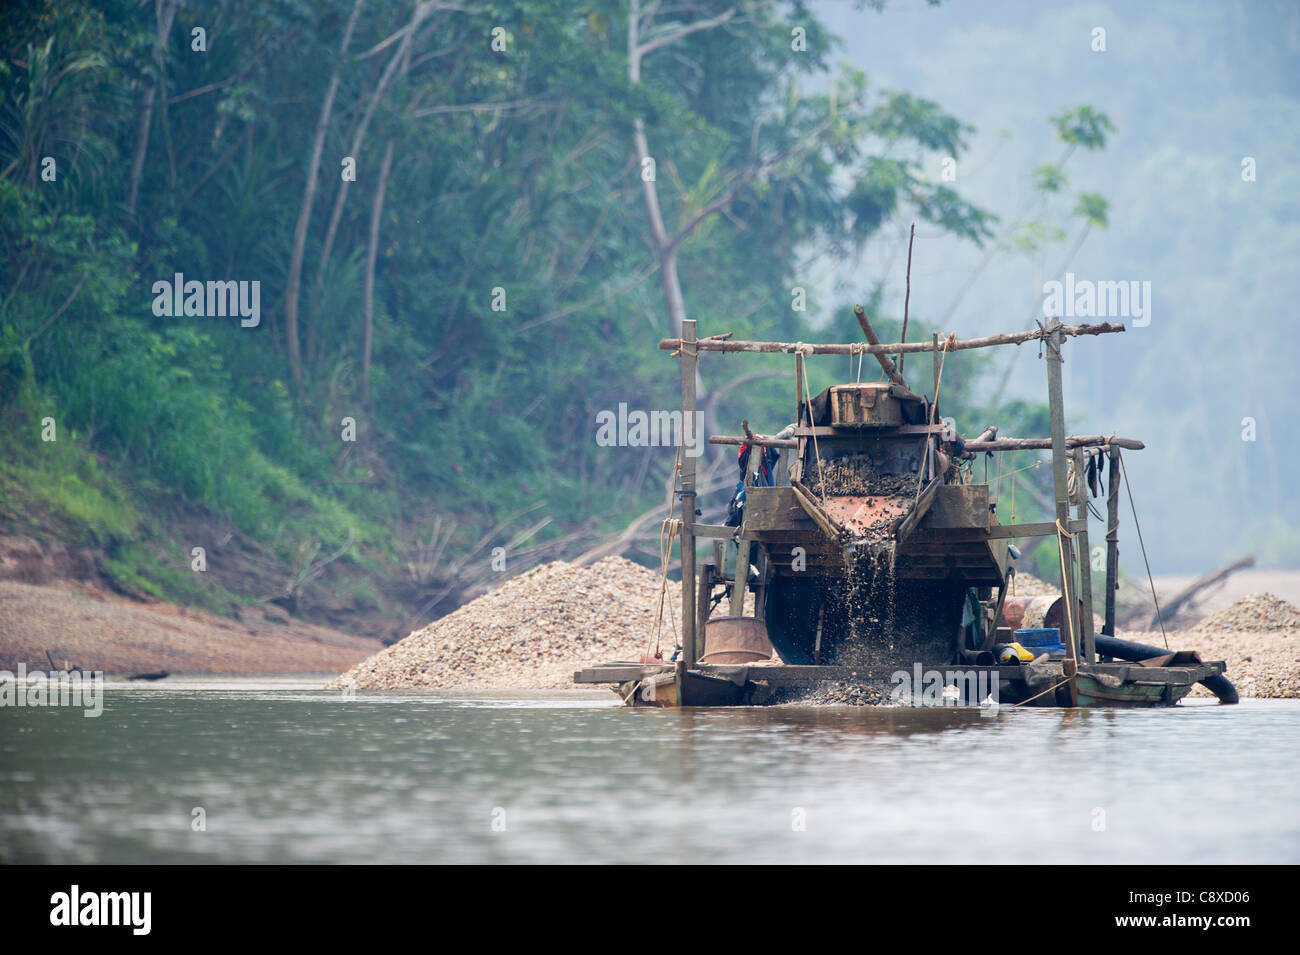 L'exploitation aurifère illégale le long de la rivière Madre de Dios, près de Puerto Maldonado en bassin Amazonien Pérou Banque D'Images